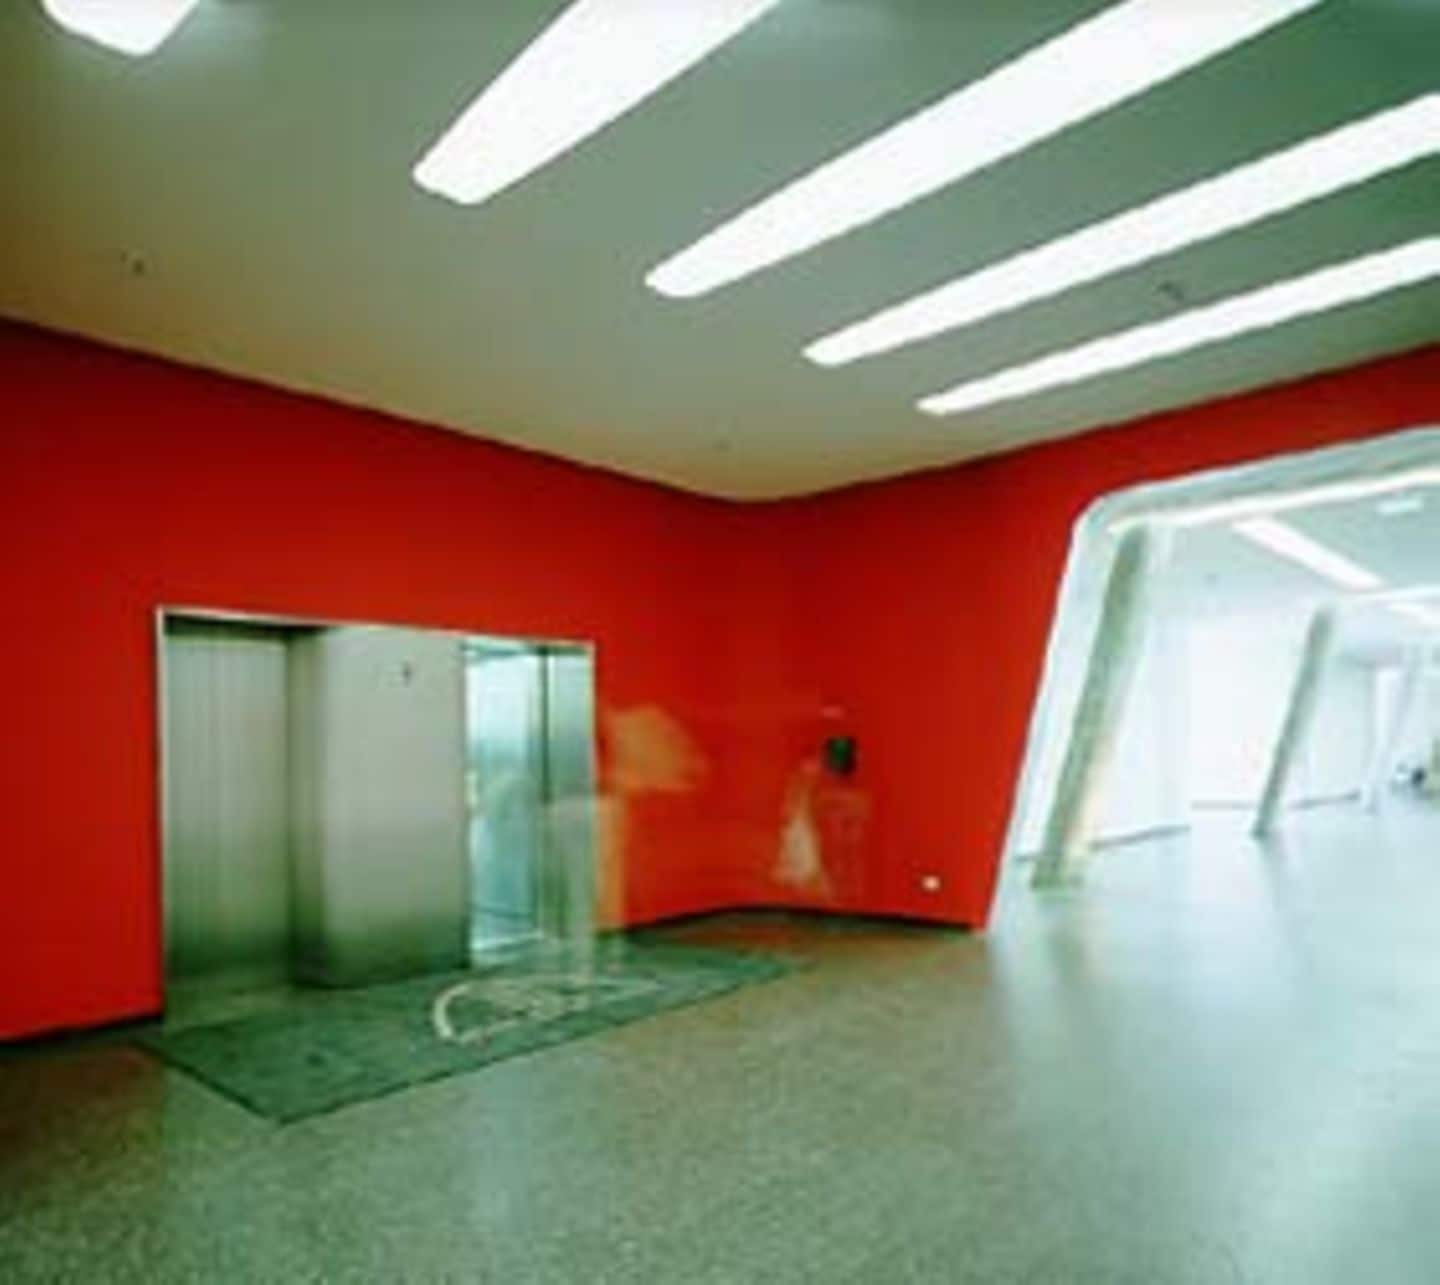 Vier Versorgungskerne, einer für jeweils zwei Seitentrakte, erschließen die sieben oberhalb gelegenen Büroetagen. Auch Gebäudedetails wie abgerundete Deckenlichtschlitze und die abgerundeten Fahrstuhleingänge wurden von BRT Architekten entworfen.